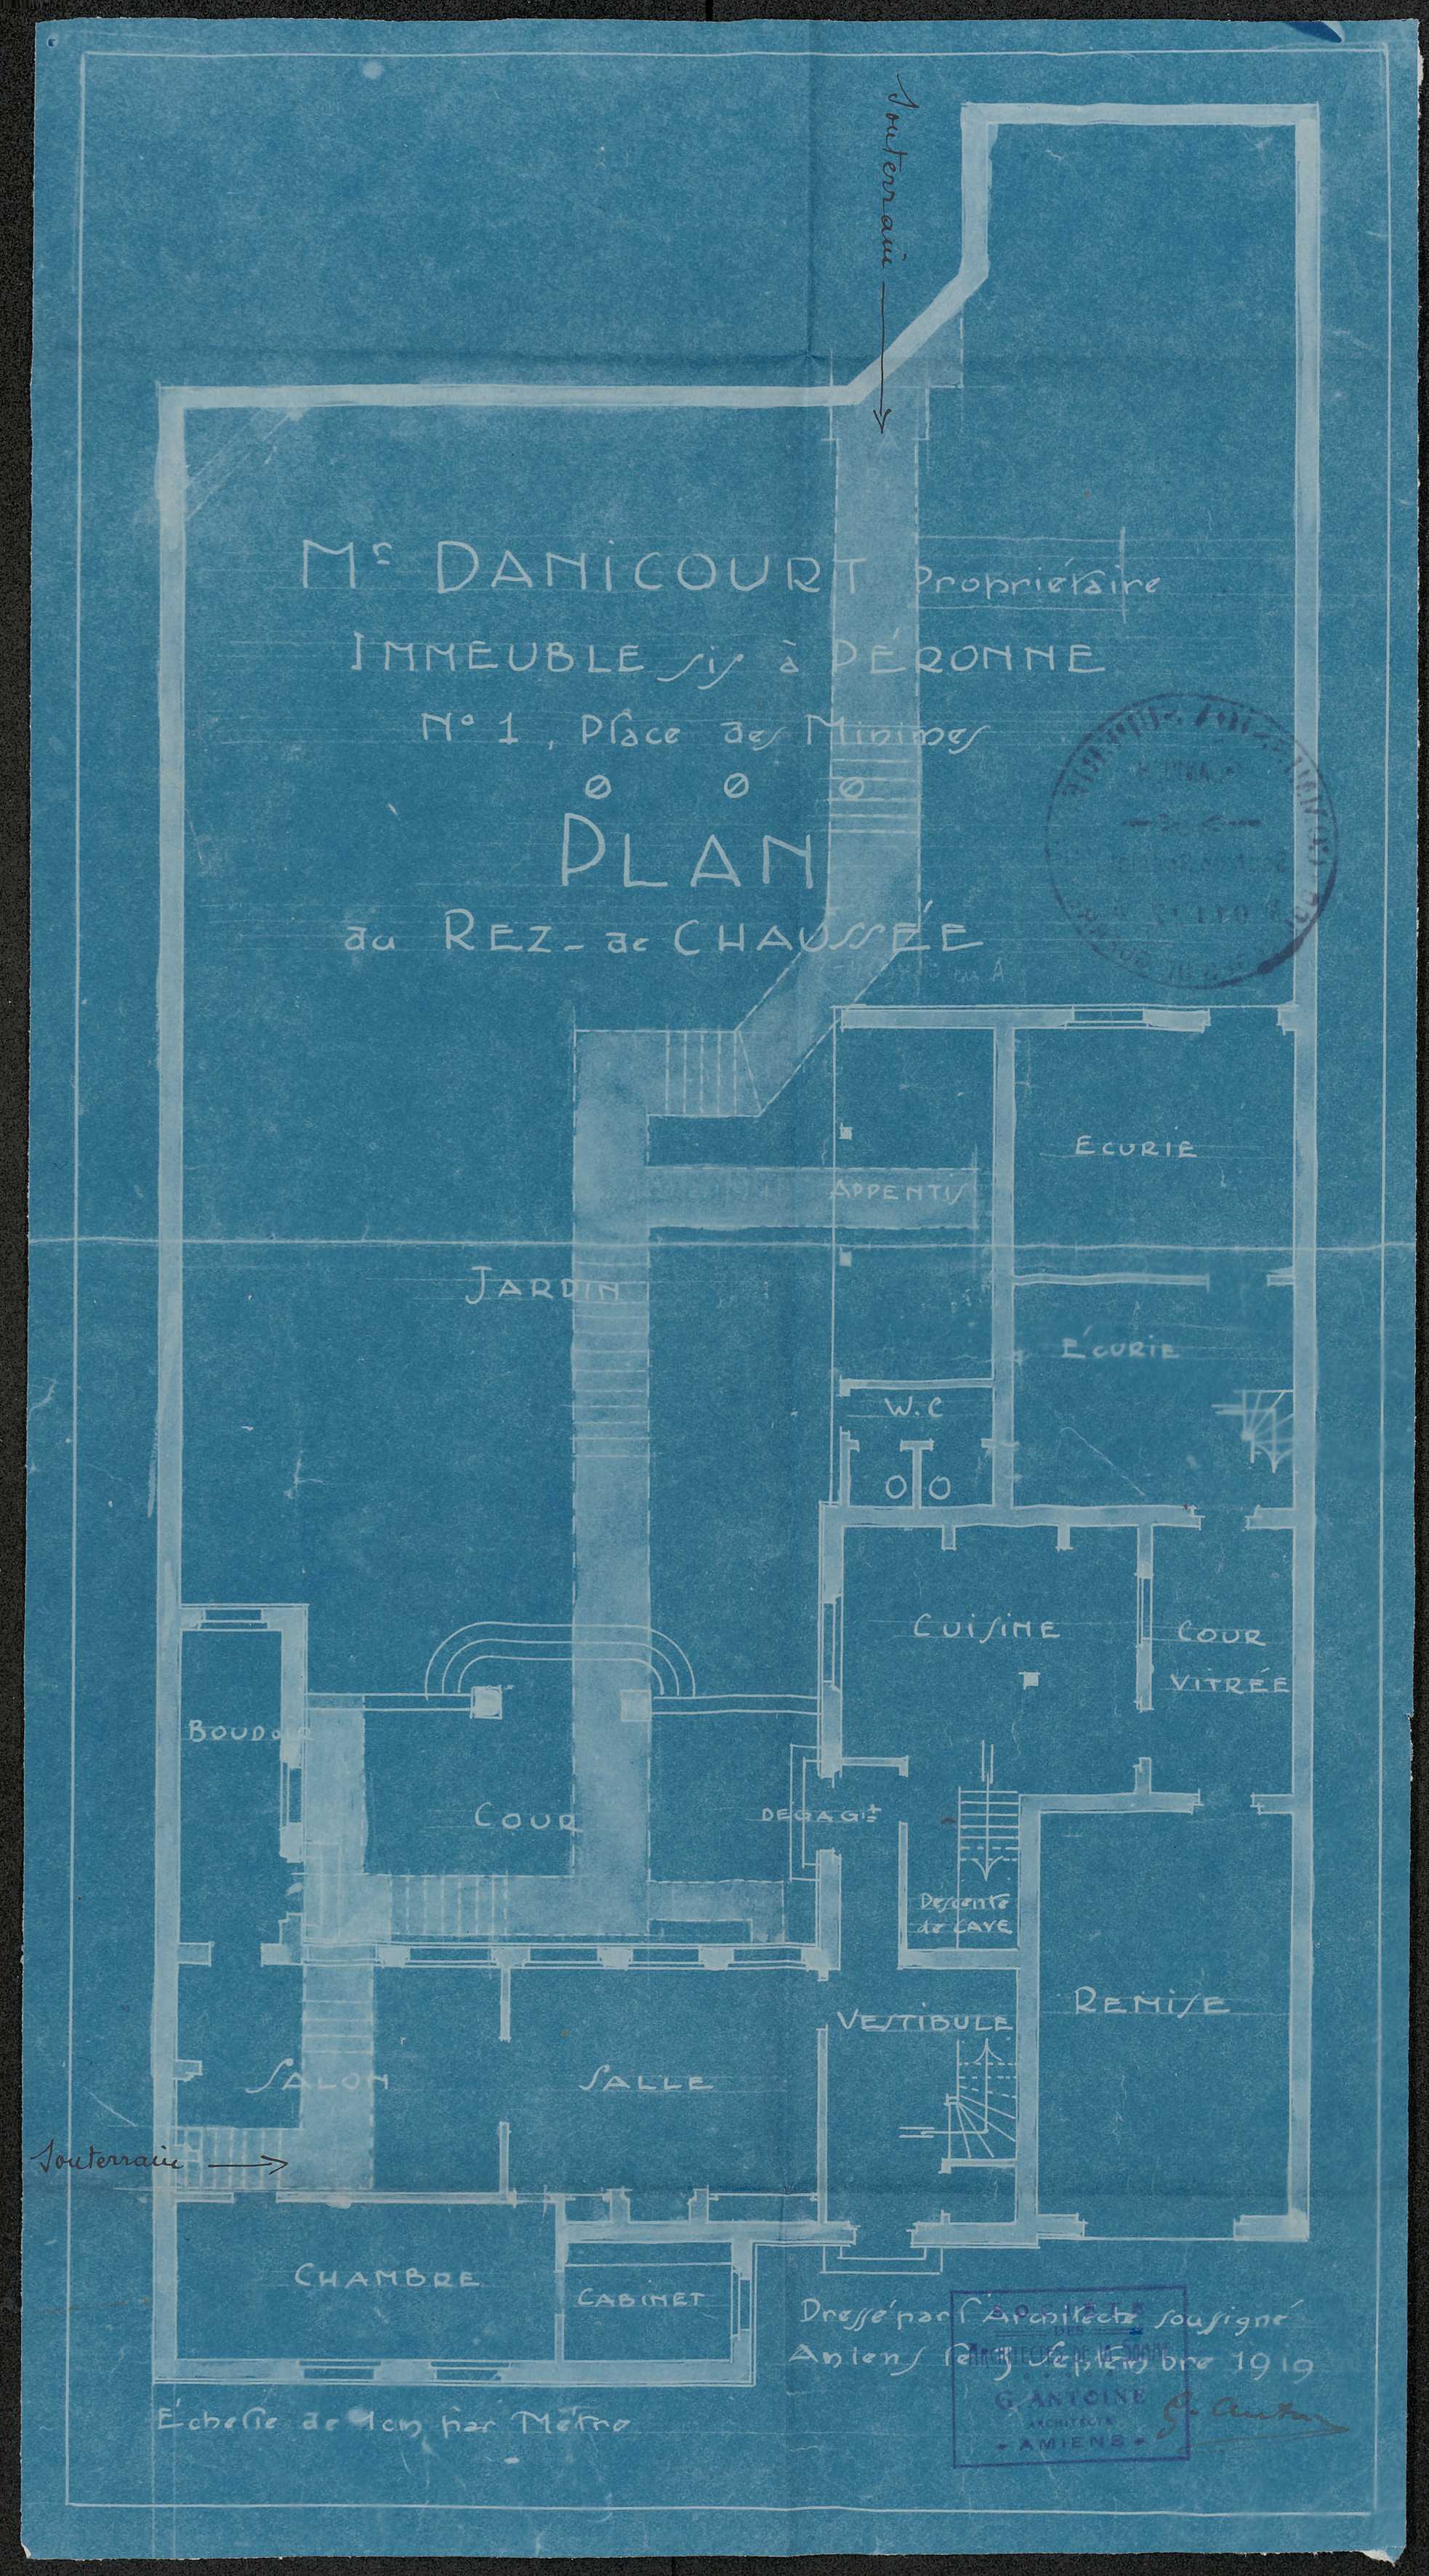 M. Danicourt. Immeuble à Péronne, 1 place des Minimes. Plan du rez-de-chaussée, G. Antoine architecte, 1919 (AD Somme ; 10R 1019).